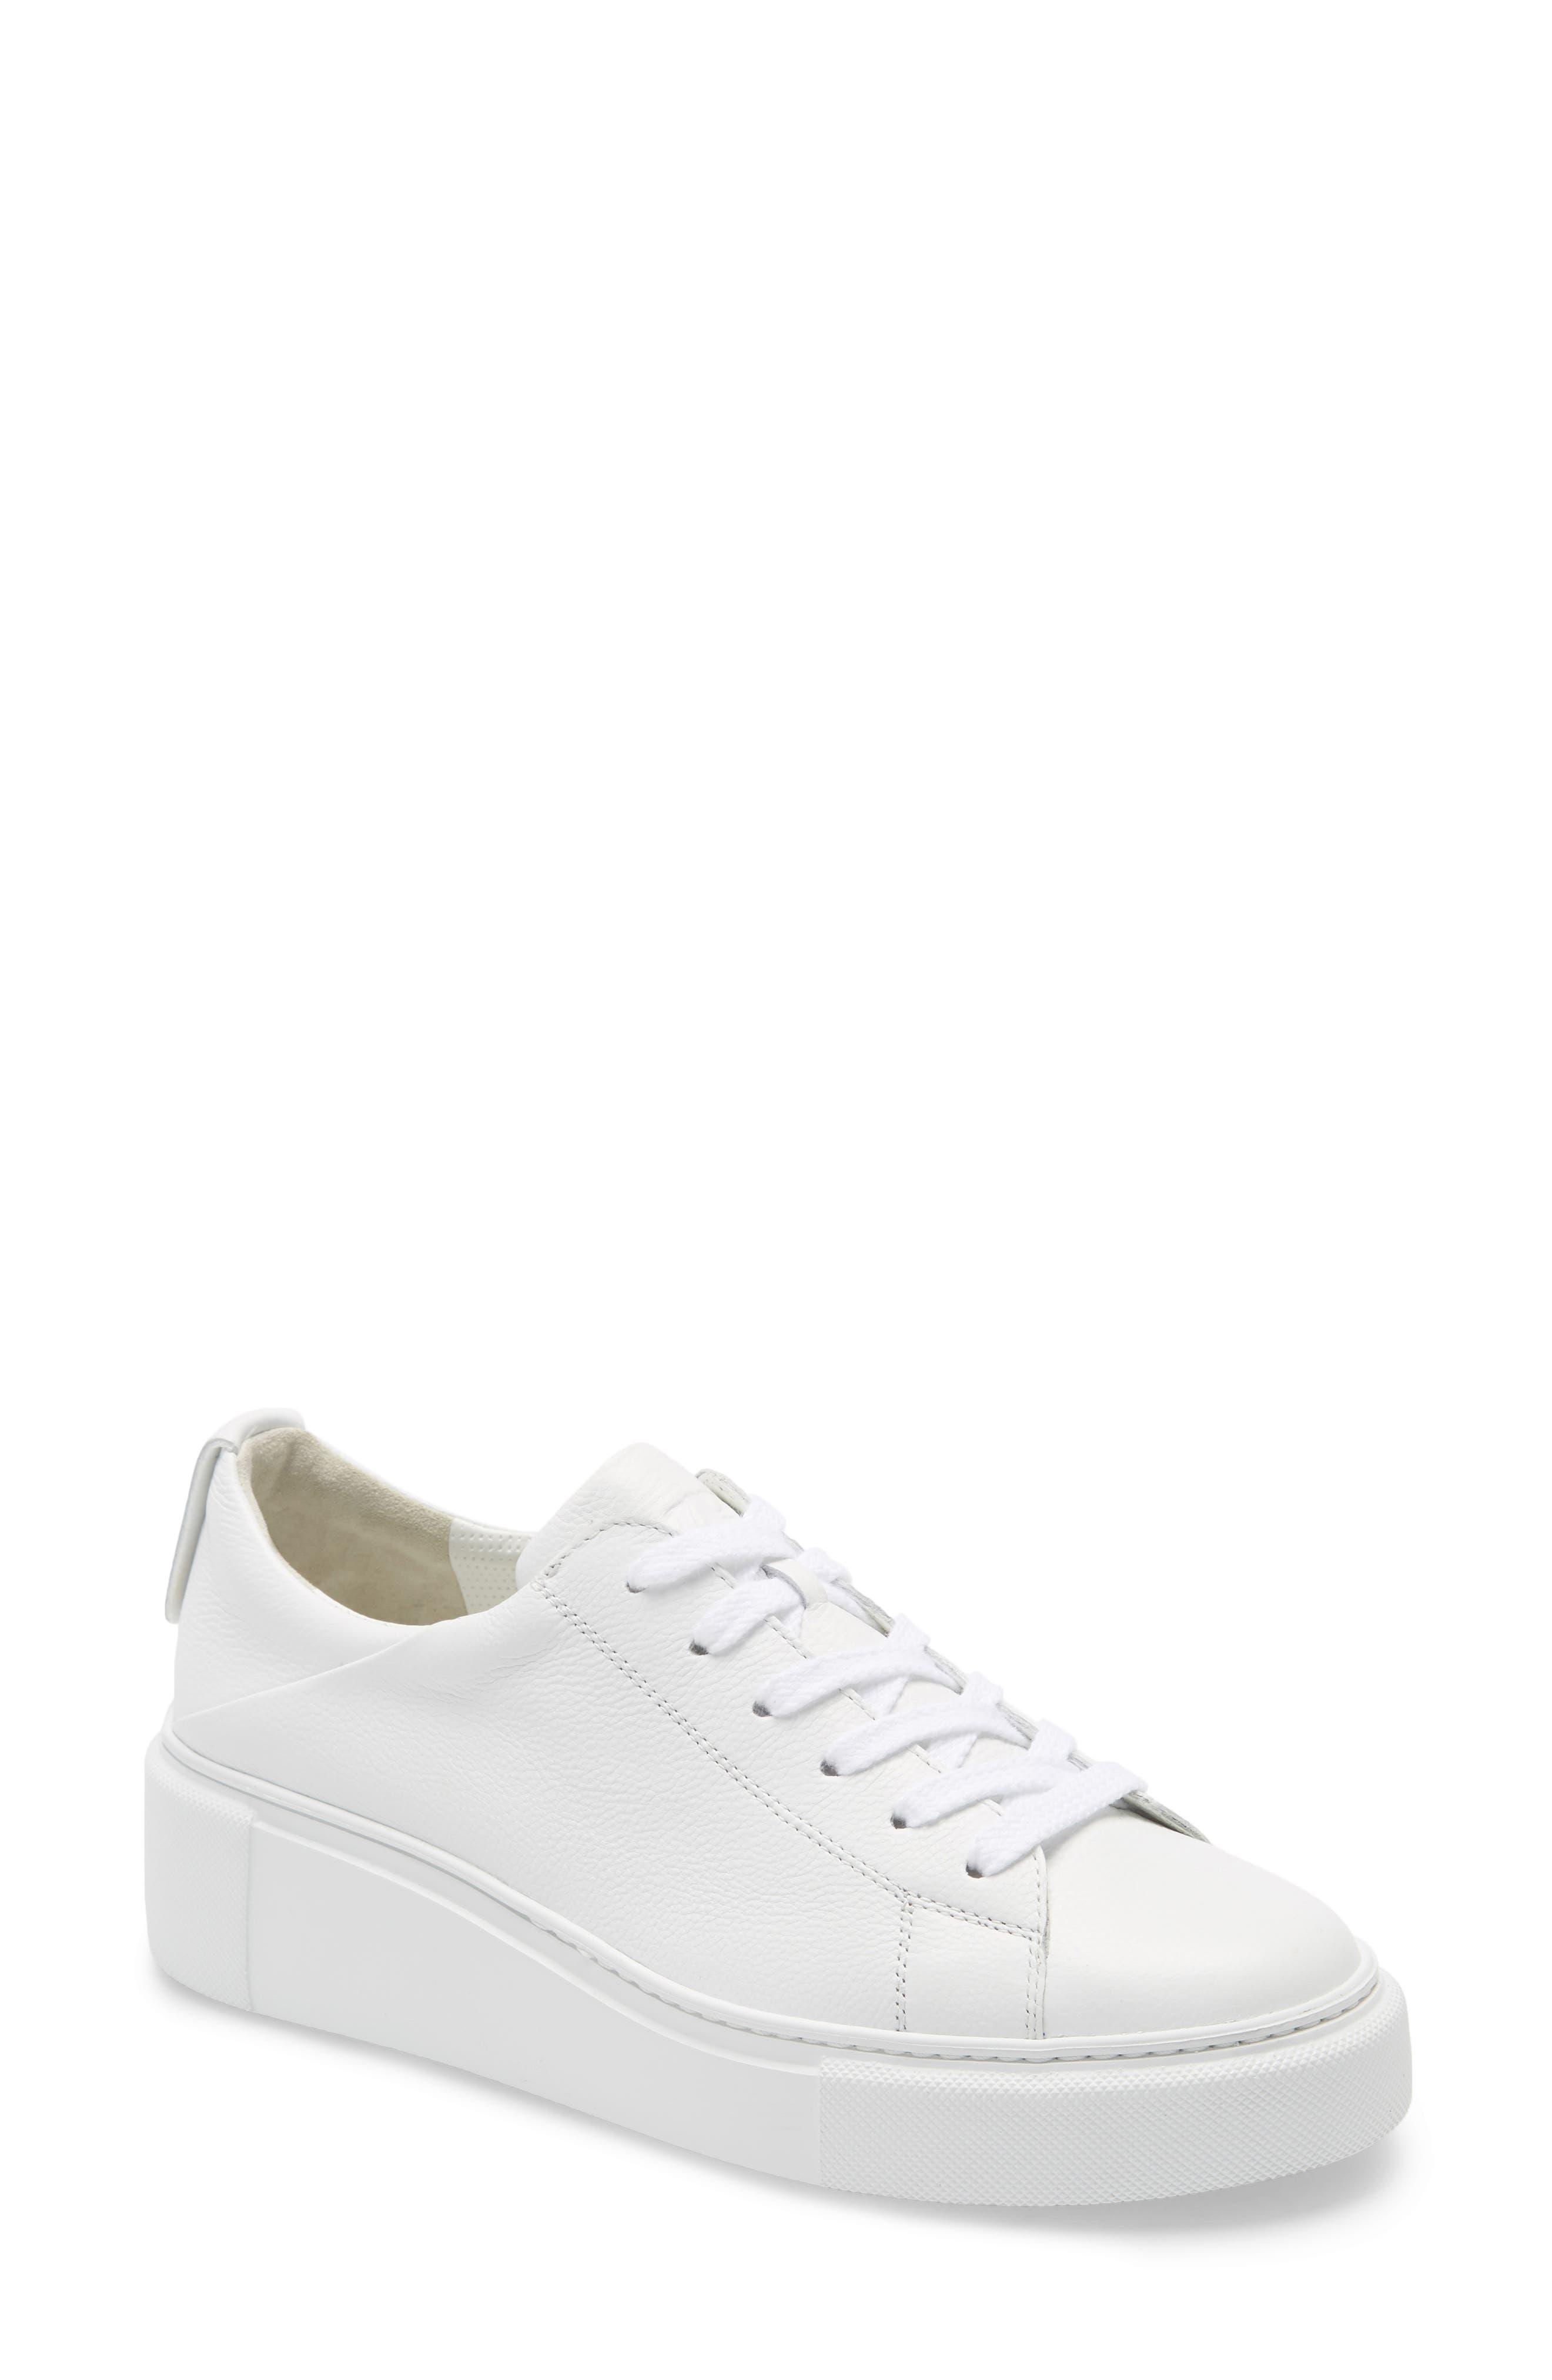 Paul Green Debbie Wedge Sneaker In White Mc Leather At Nordstrom Rack in  Black | Lyst